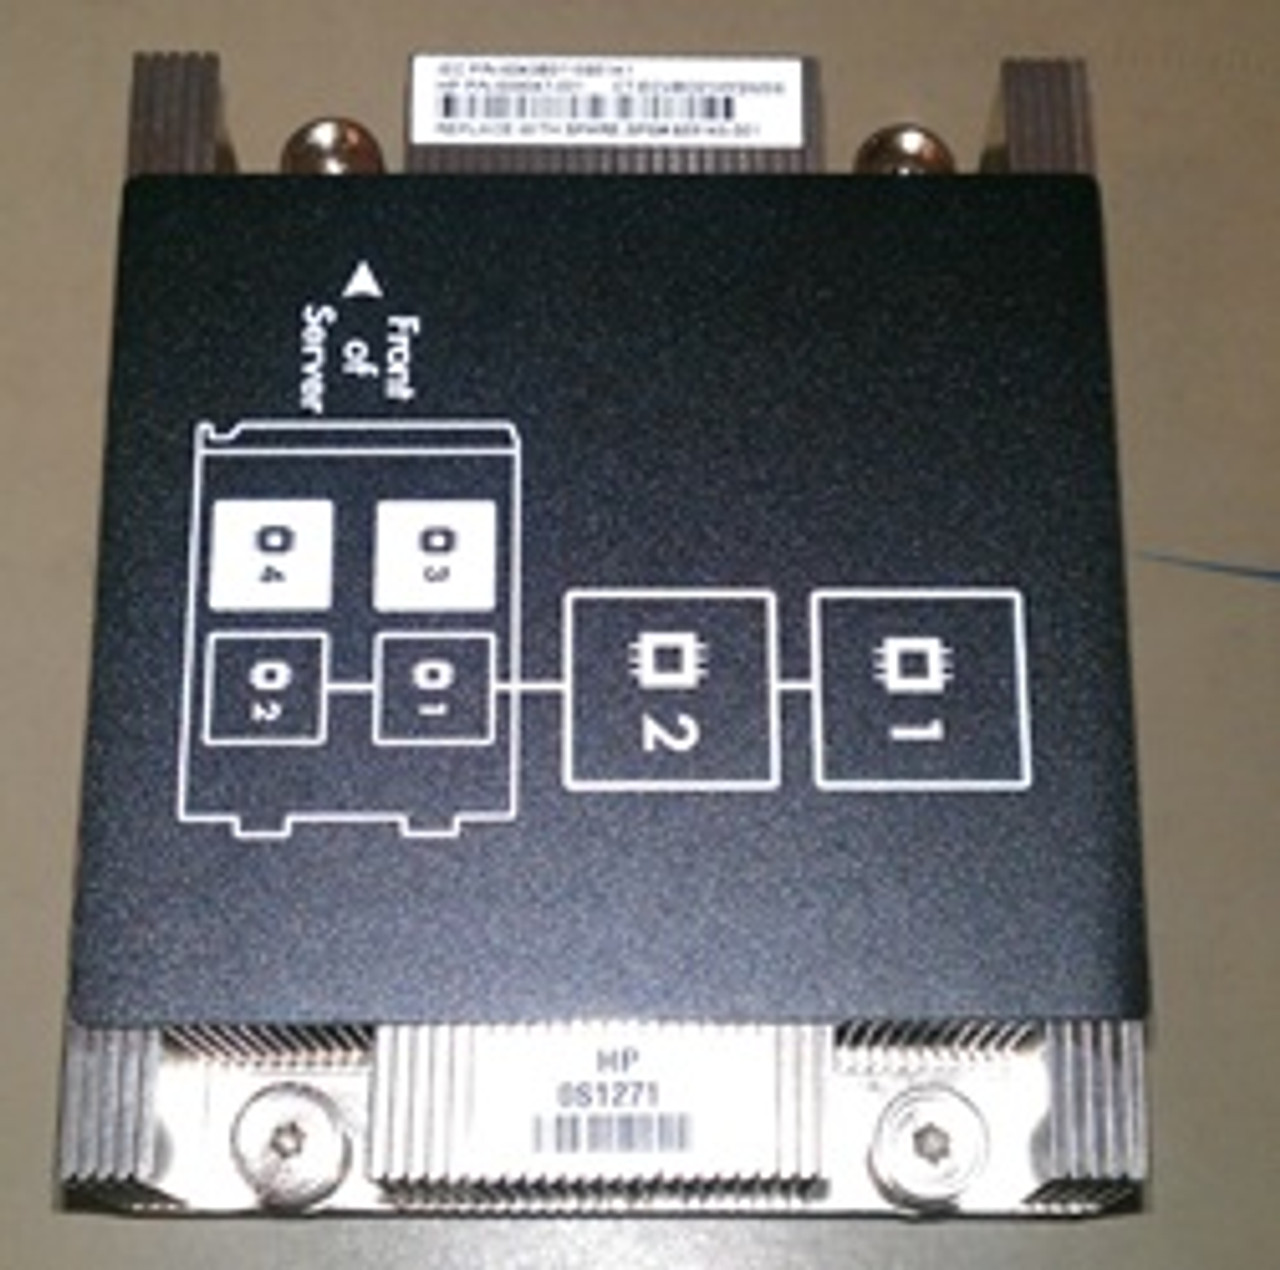 SPS-Heat Sink CPU 1 and 2 BL660c Gen8 - 689143-001